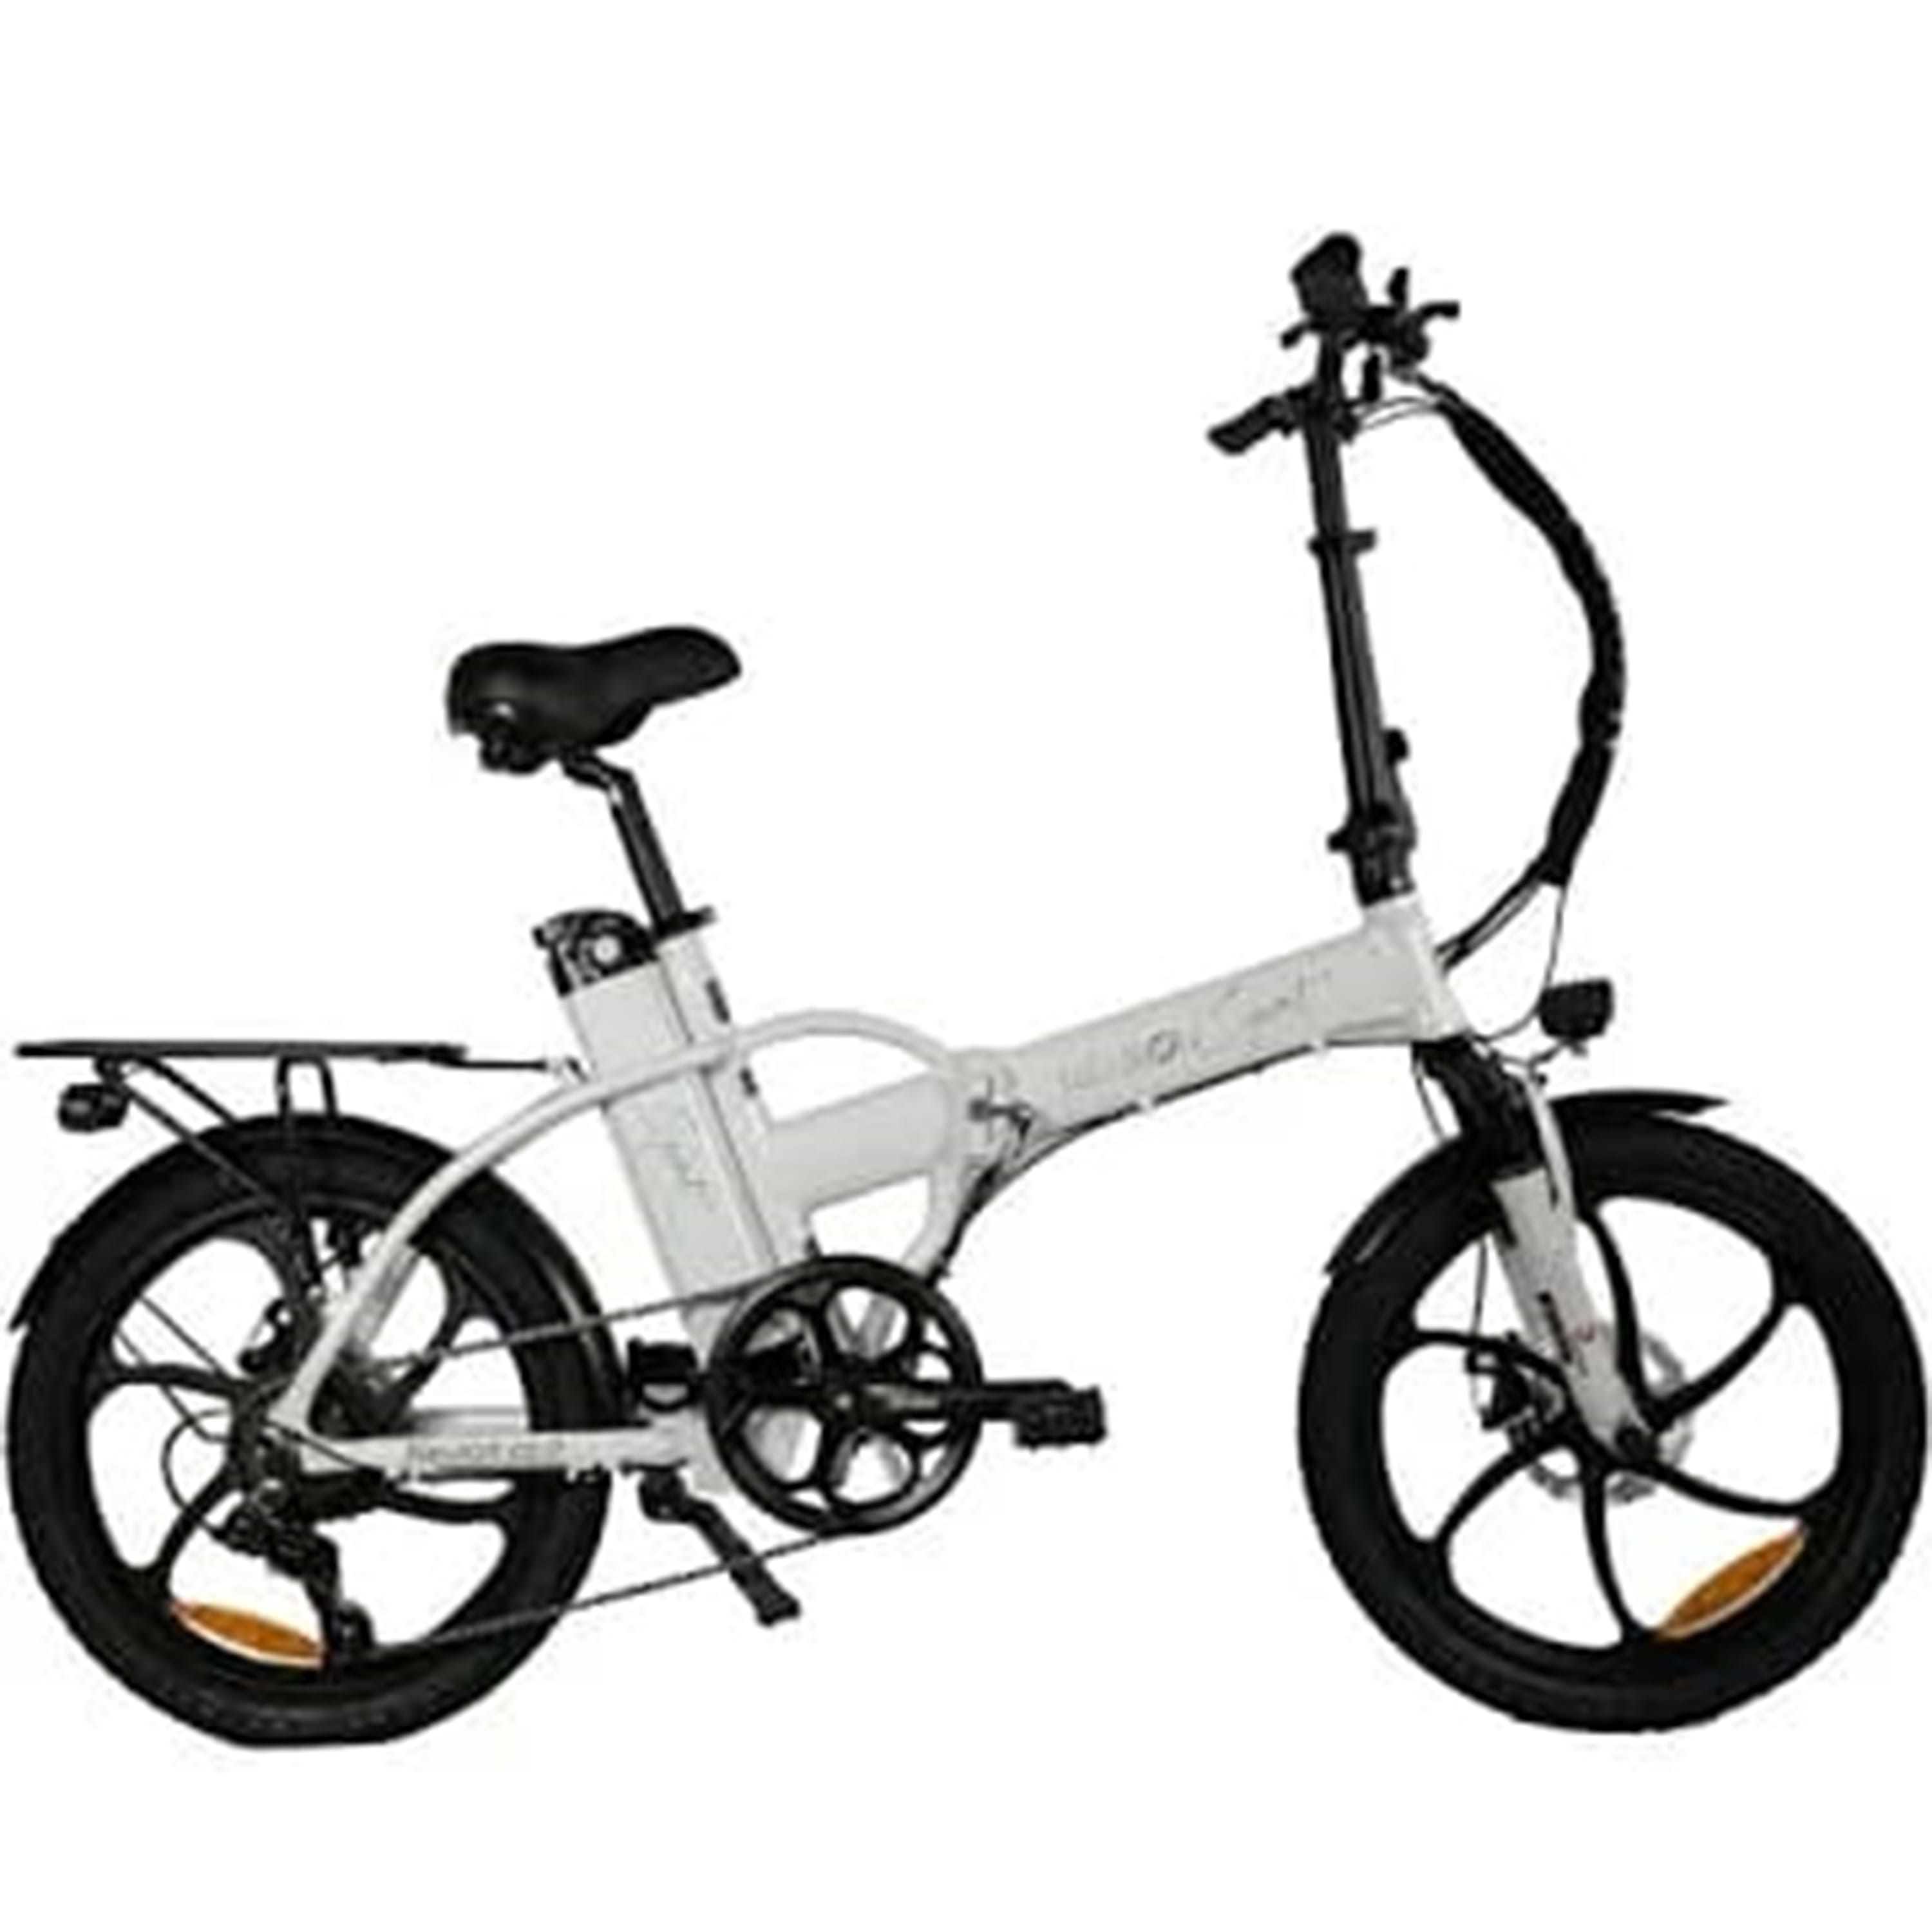 אופניים חשמליים עם צג דיגיטלי Neuron Spirit - צבע לבן עם ג'אנטים שחורים שנה אחריות ע